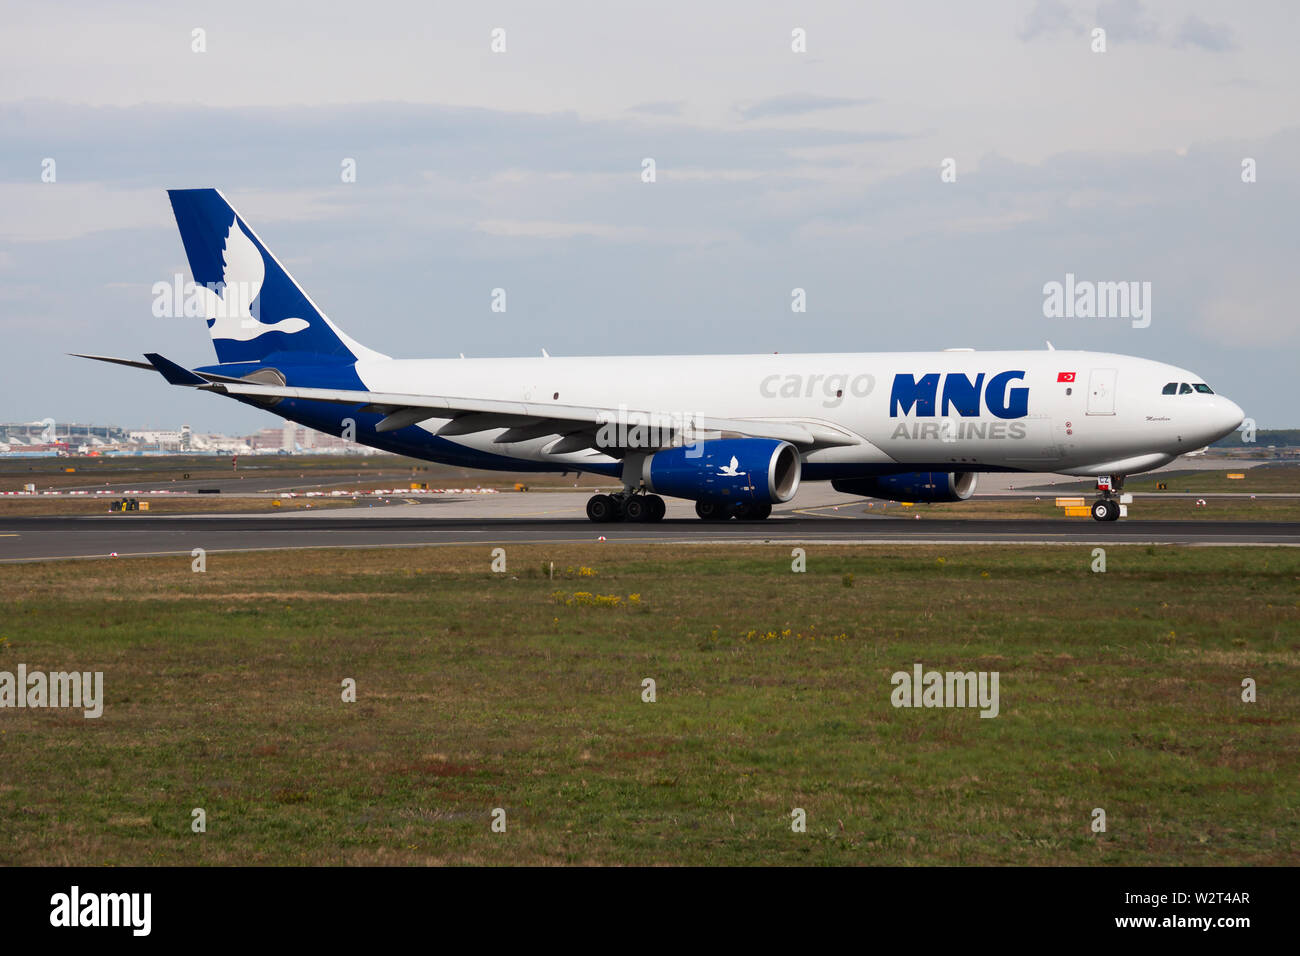 FRANKFURT / ALEMANIA - Abril 26, 2015: MNG Airlines Cargo Airbus A330-200 TC-MCZ avión de carga de la salida en el aeropuerto de Frankfurt Foto de stock